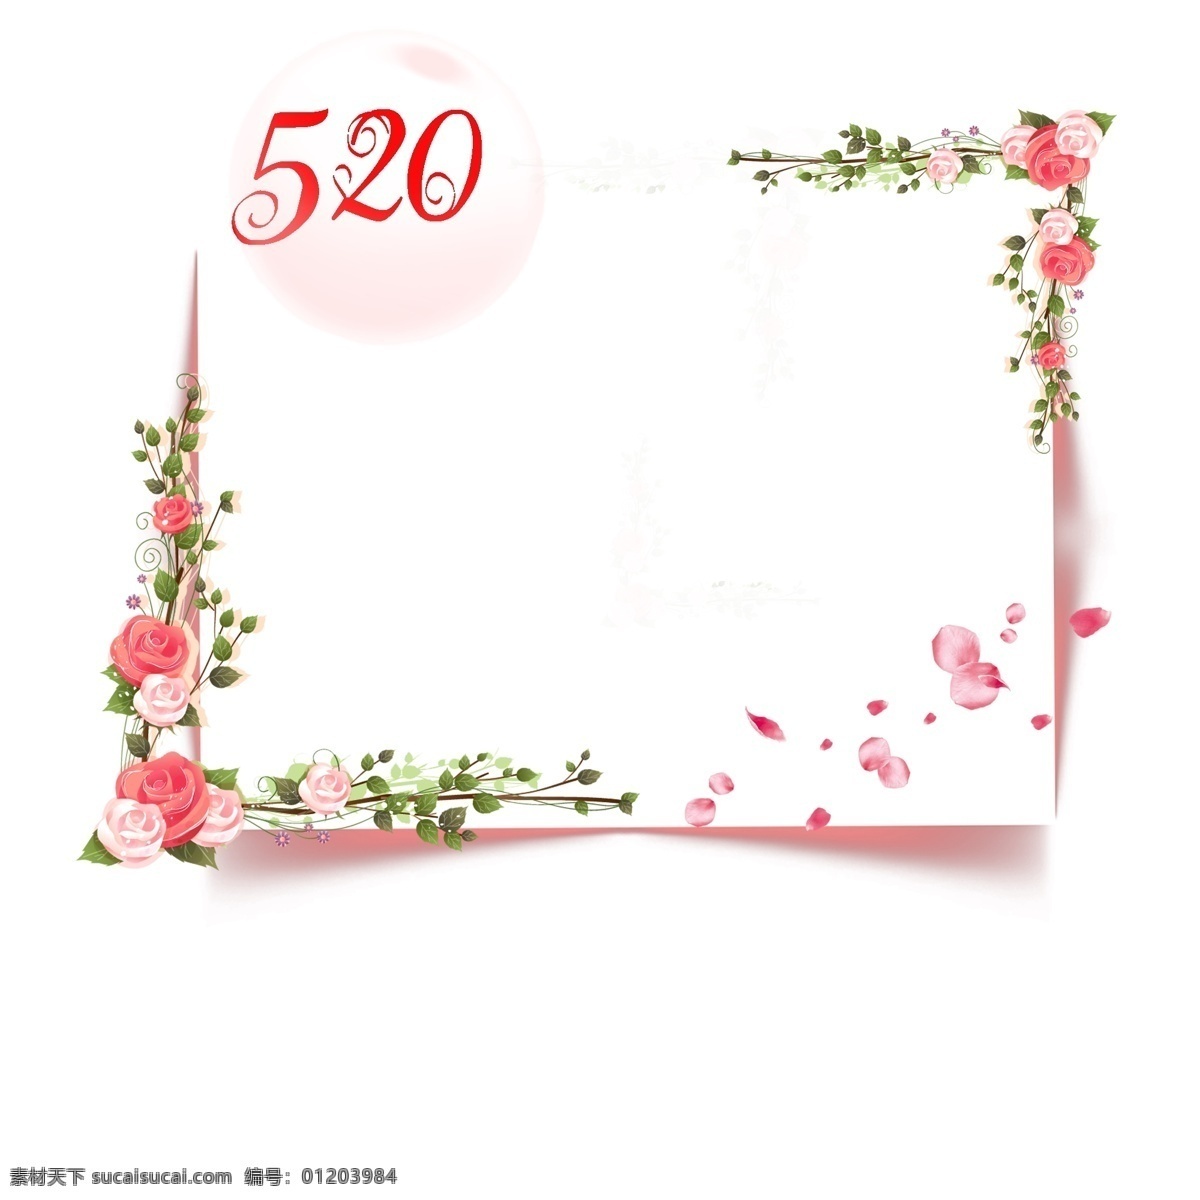 520 花卉边框元素 唯美边框 粉红色 浪漫边框 情人节 卡通 唯美 可爱边框 清新边框 彩色边框 粉红色边框 粉红色玫瑰花 花朵